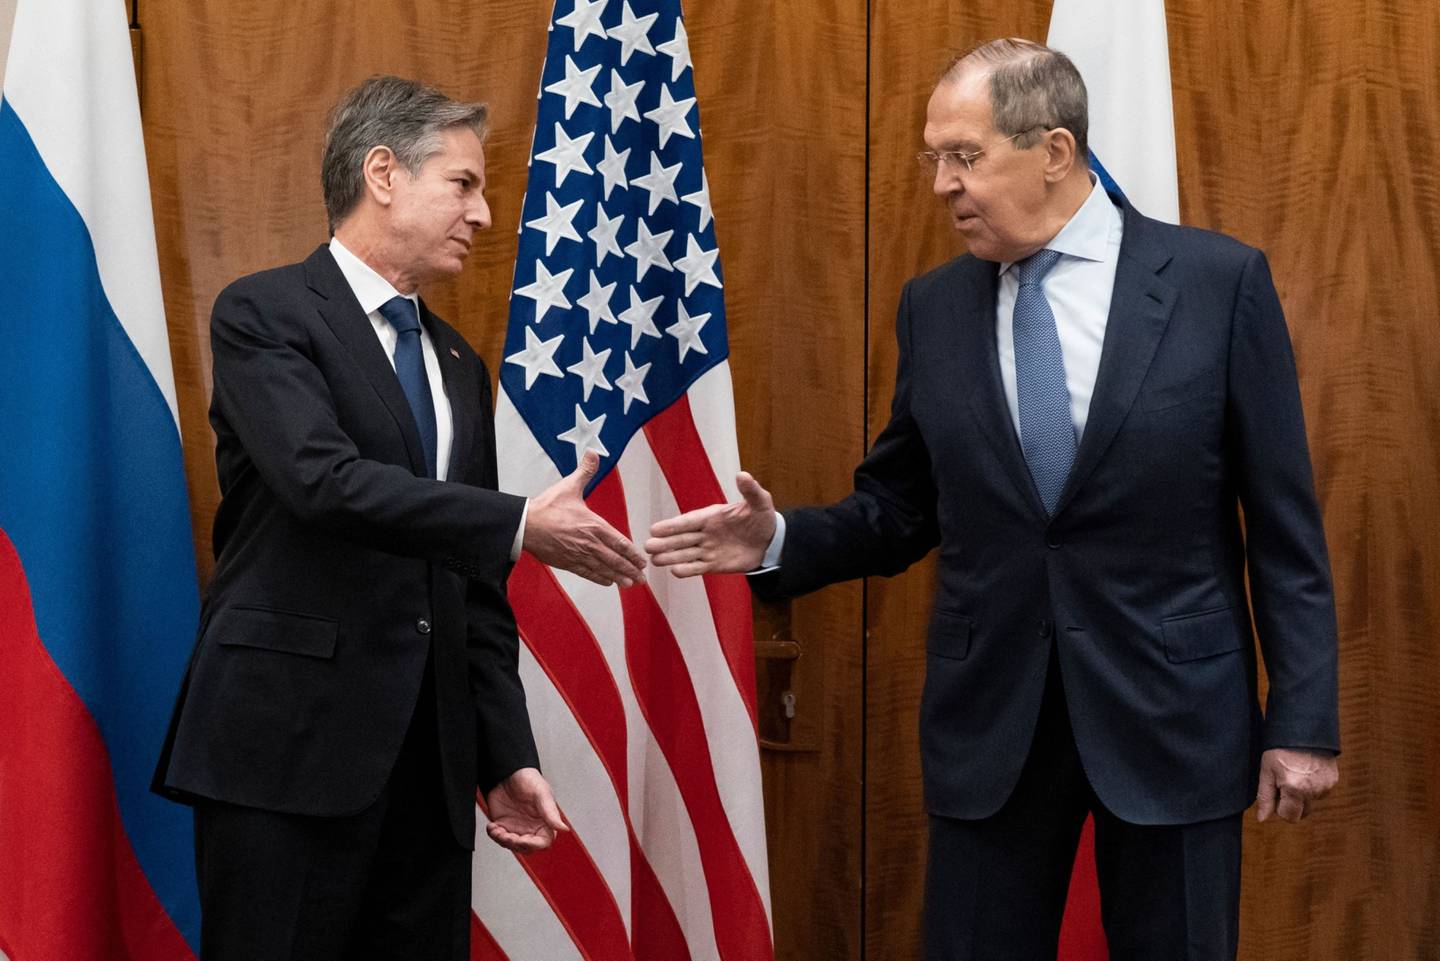 El Secretario de estado de EE.UU., Antony Blinken (izq.), saluda al Ministro de Asuntos Exteriores ruso, Sergey Lavrov, antes de su reunión, en Ginebra, el 21 de enero de 2022